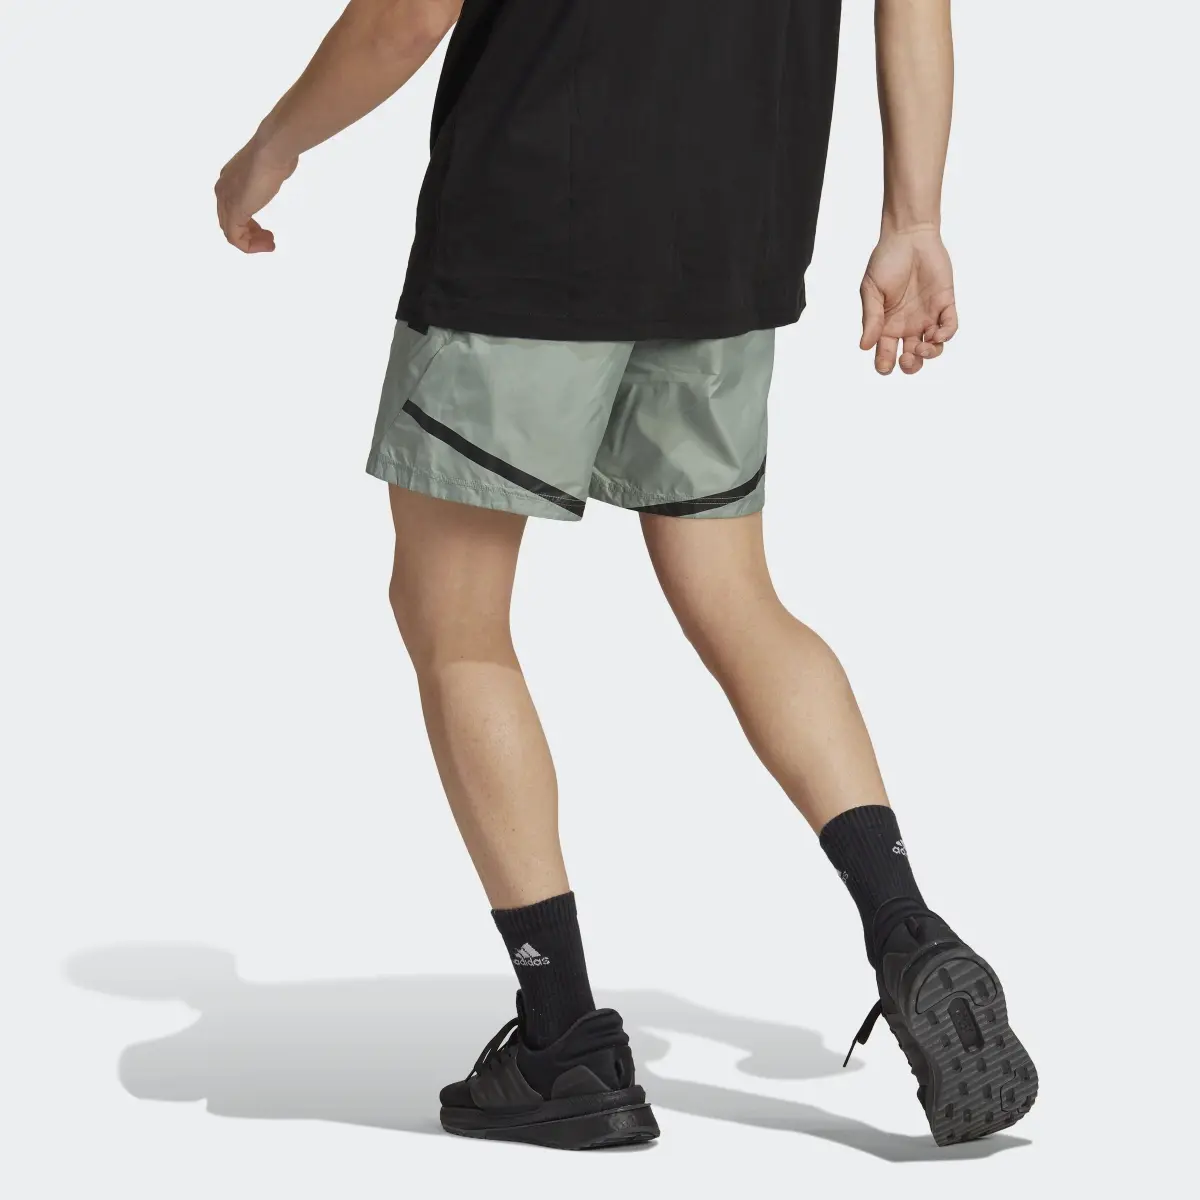 Adidas Designed 4 Gameday Shorts. 2